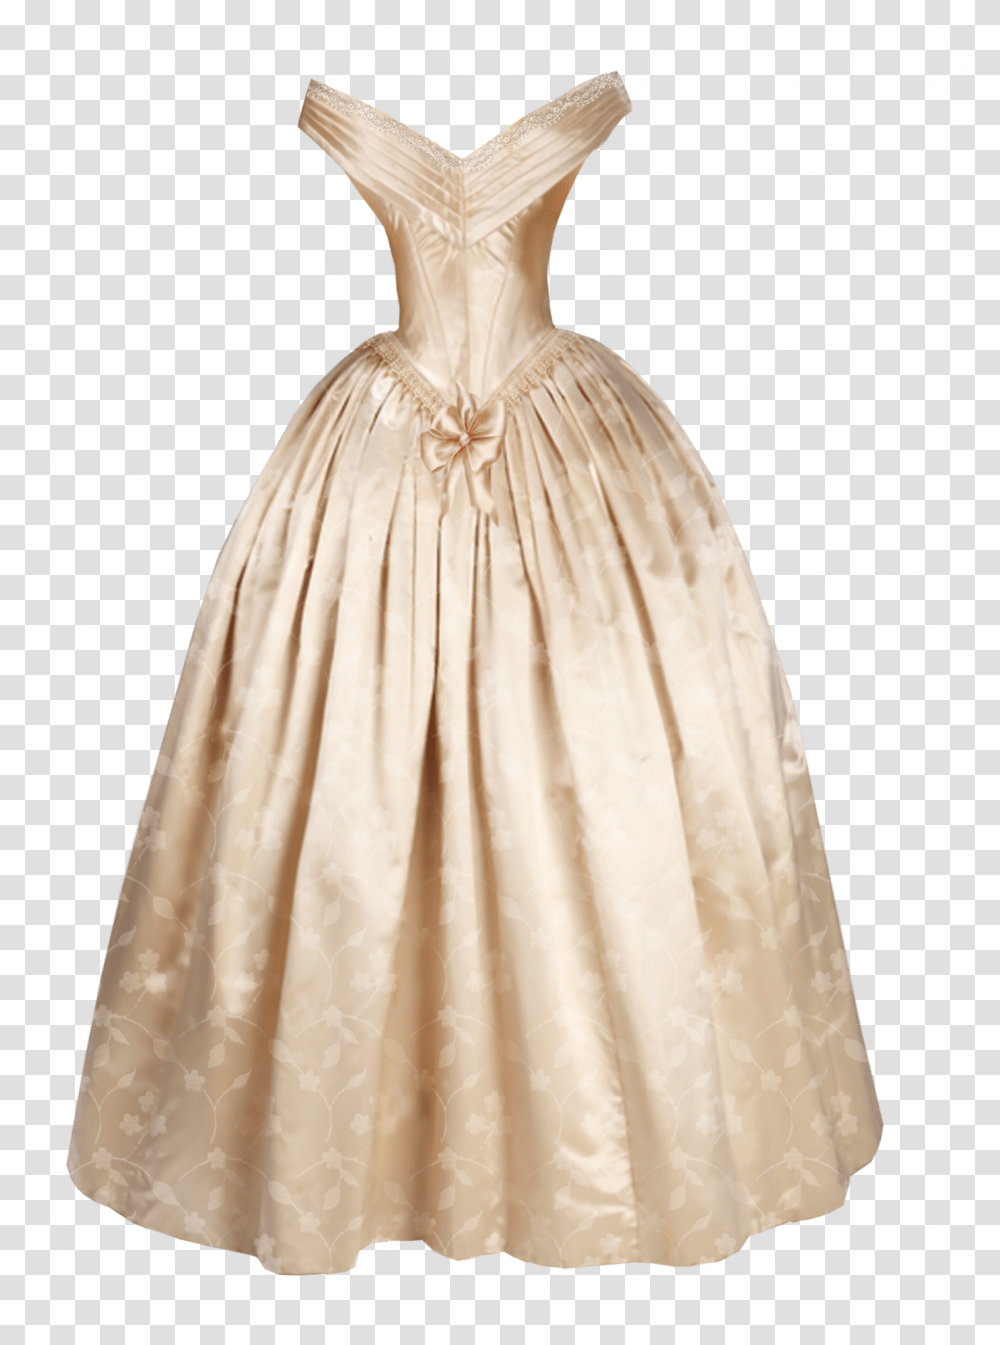 Tubes Robes De Mariage Dessin De Robe De Mariage Facile, Apparel, Evening Dress, Gown Transparent Png